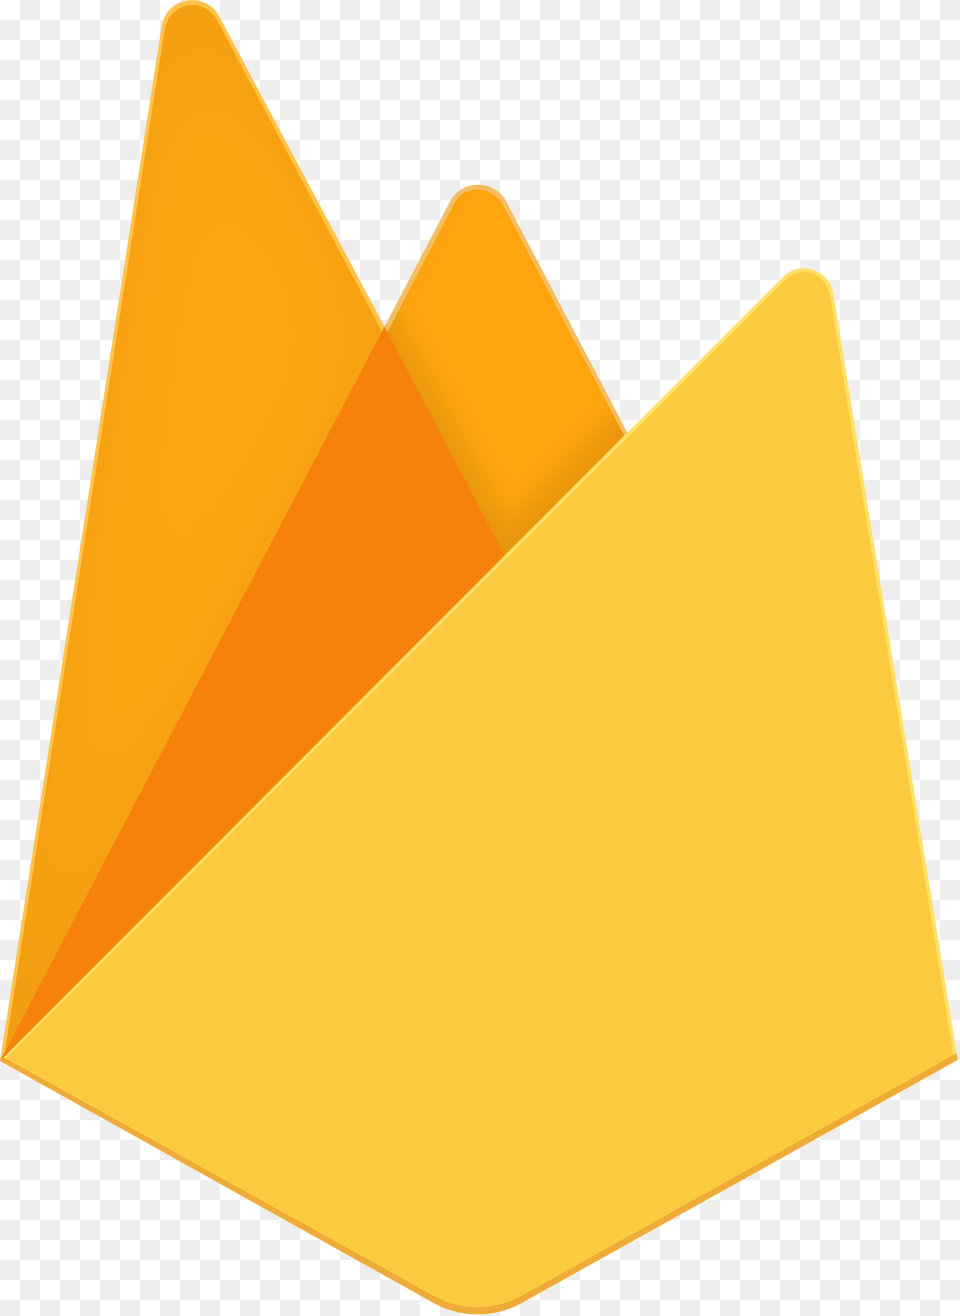 Firebase Logo Svg, File Png Image